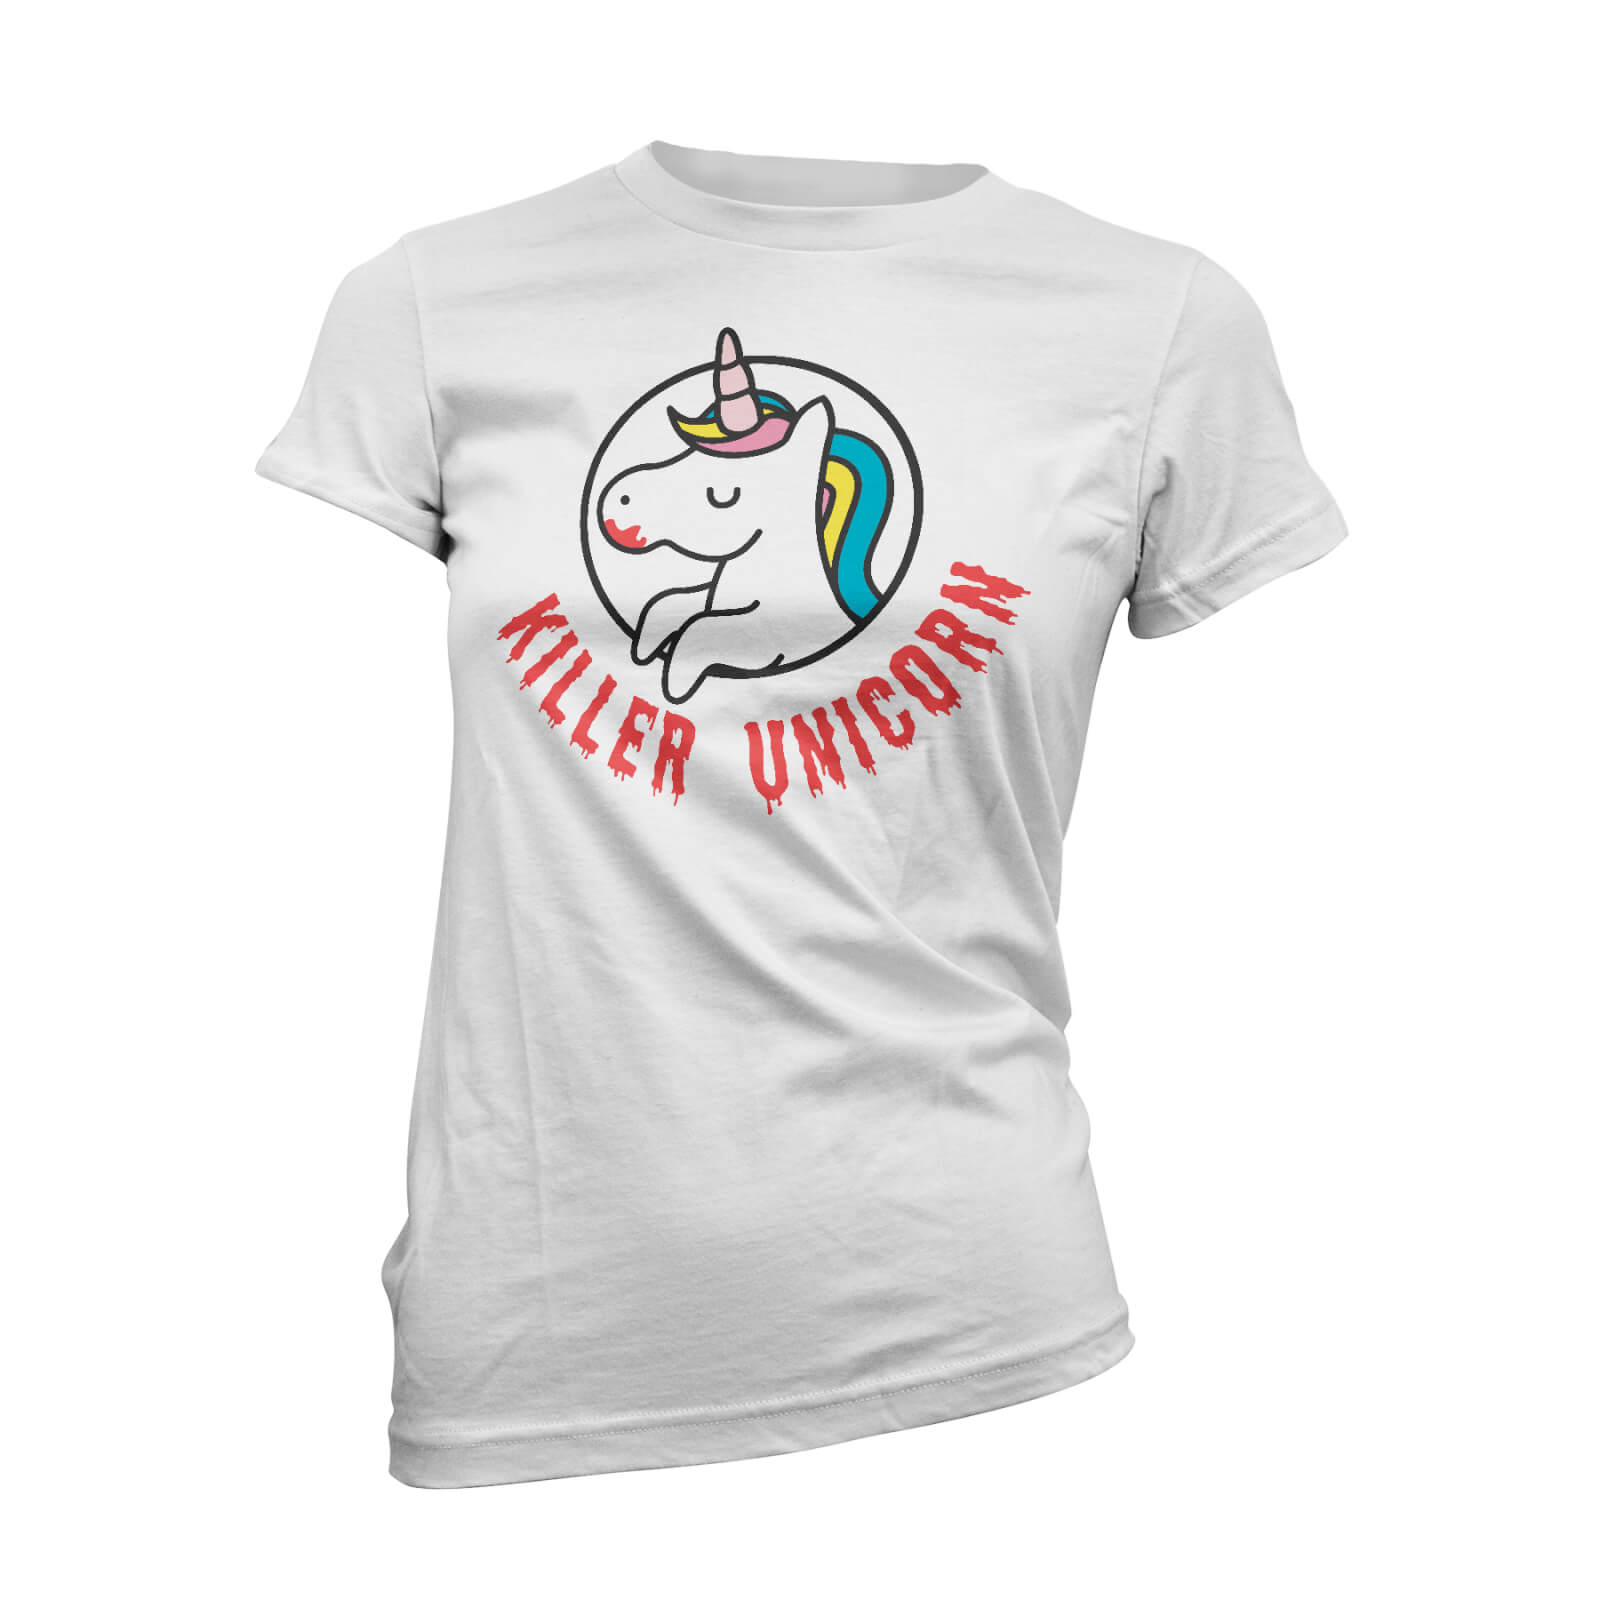 Killer Unicorn Women's White T-Shirt - S - White